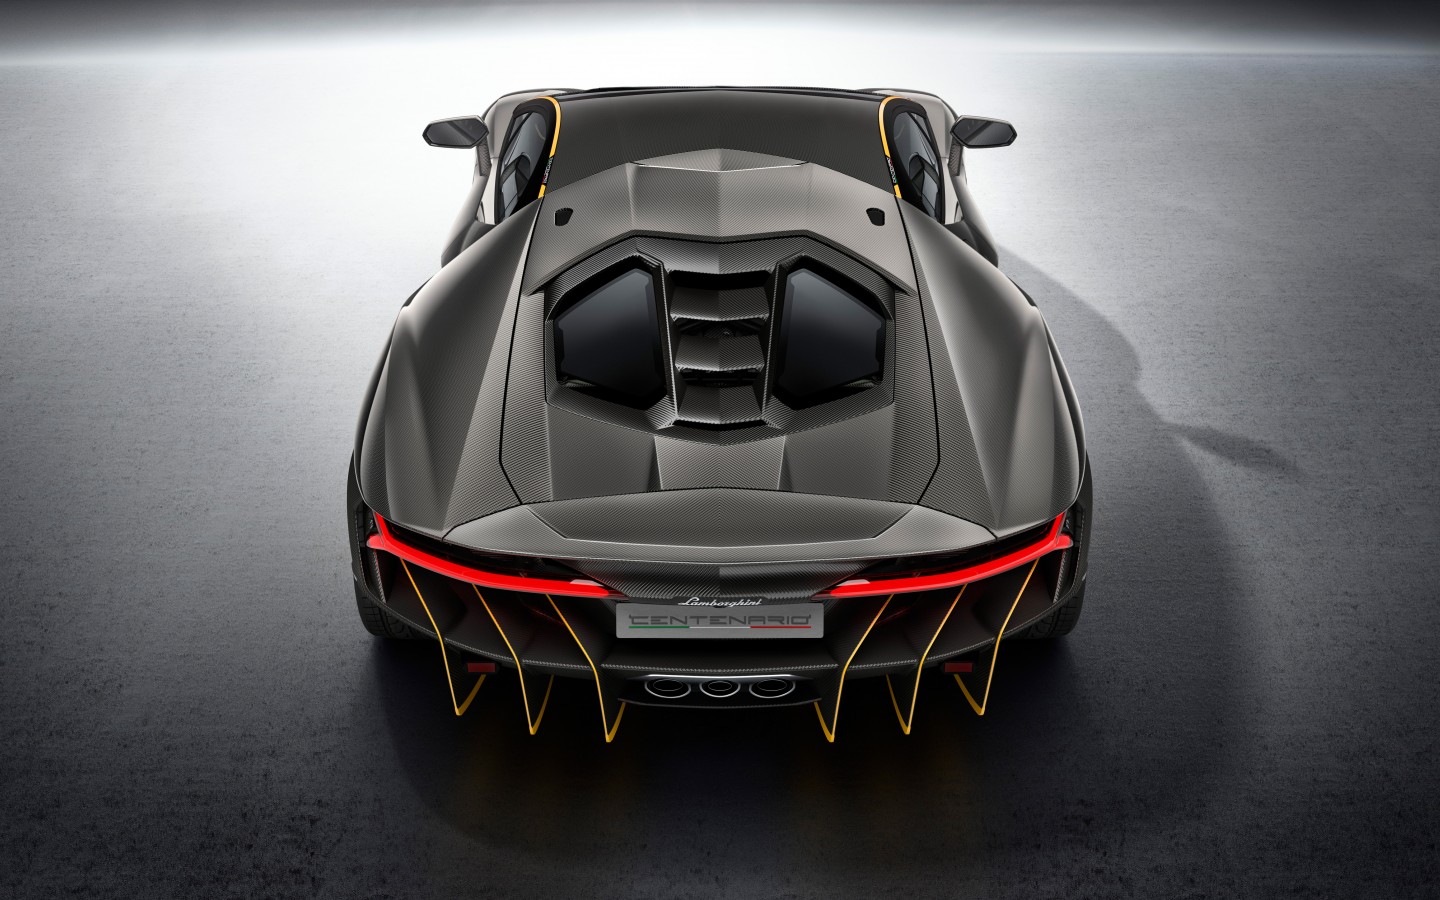 2016 Lamborghini Centenario, вид сзади 1440x900